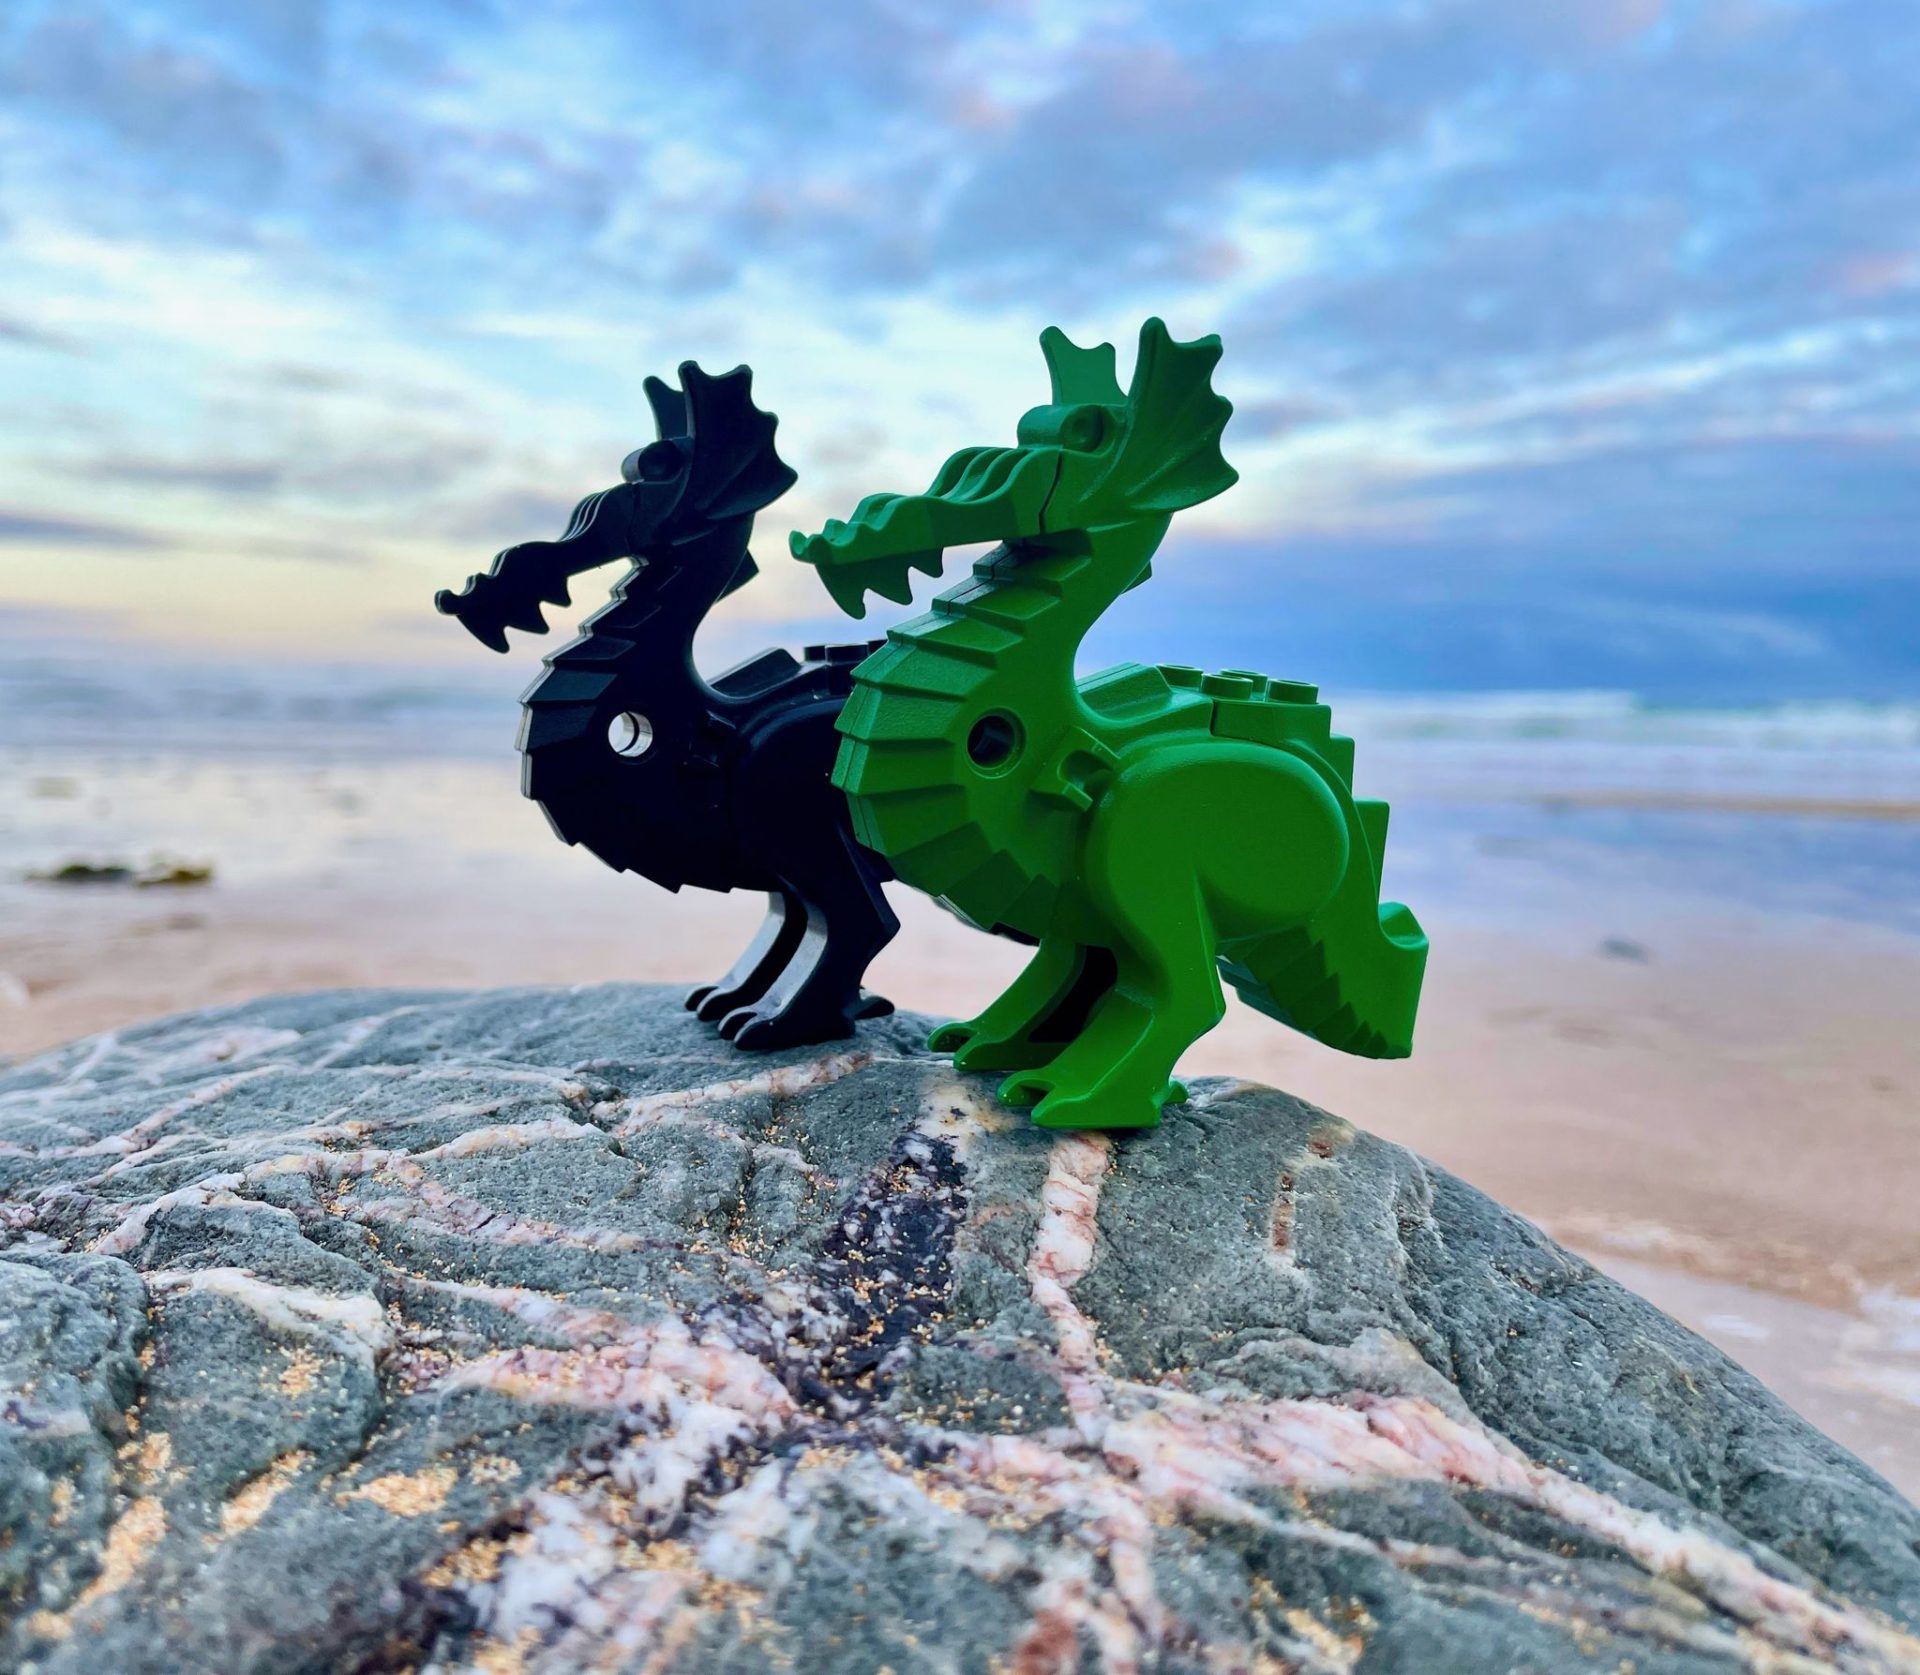 Algunas de las piezas perdidas de Lego que fueron arrojadas a las playas